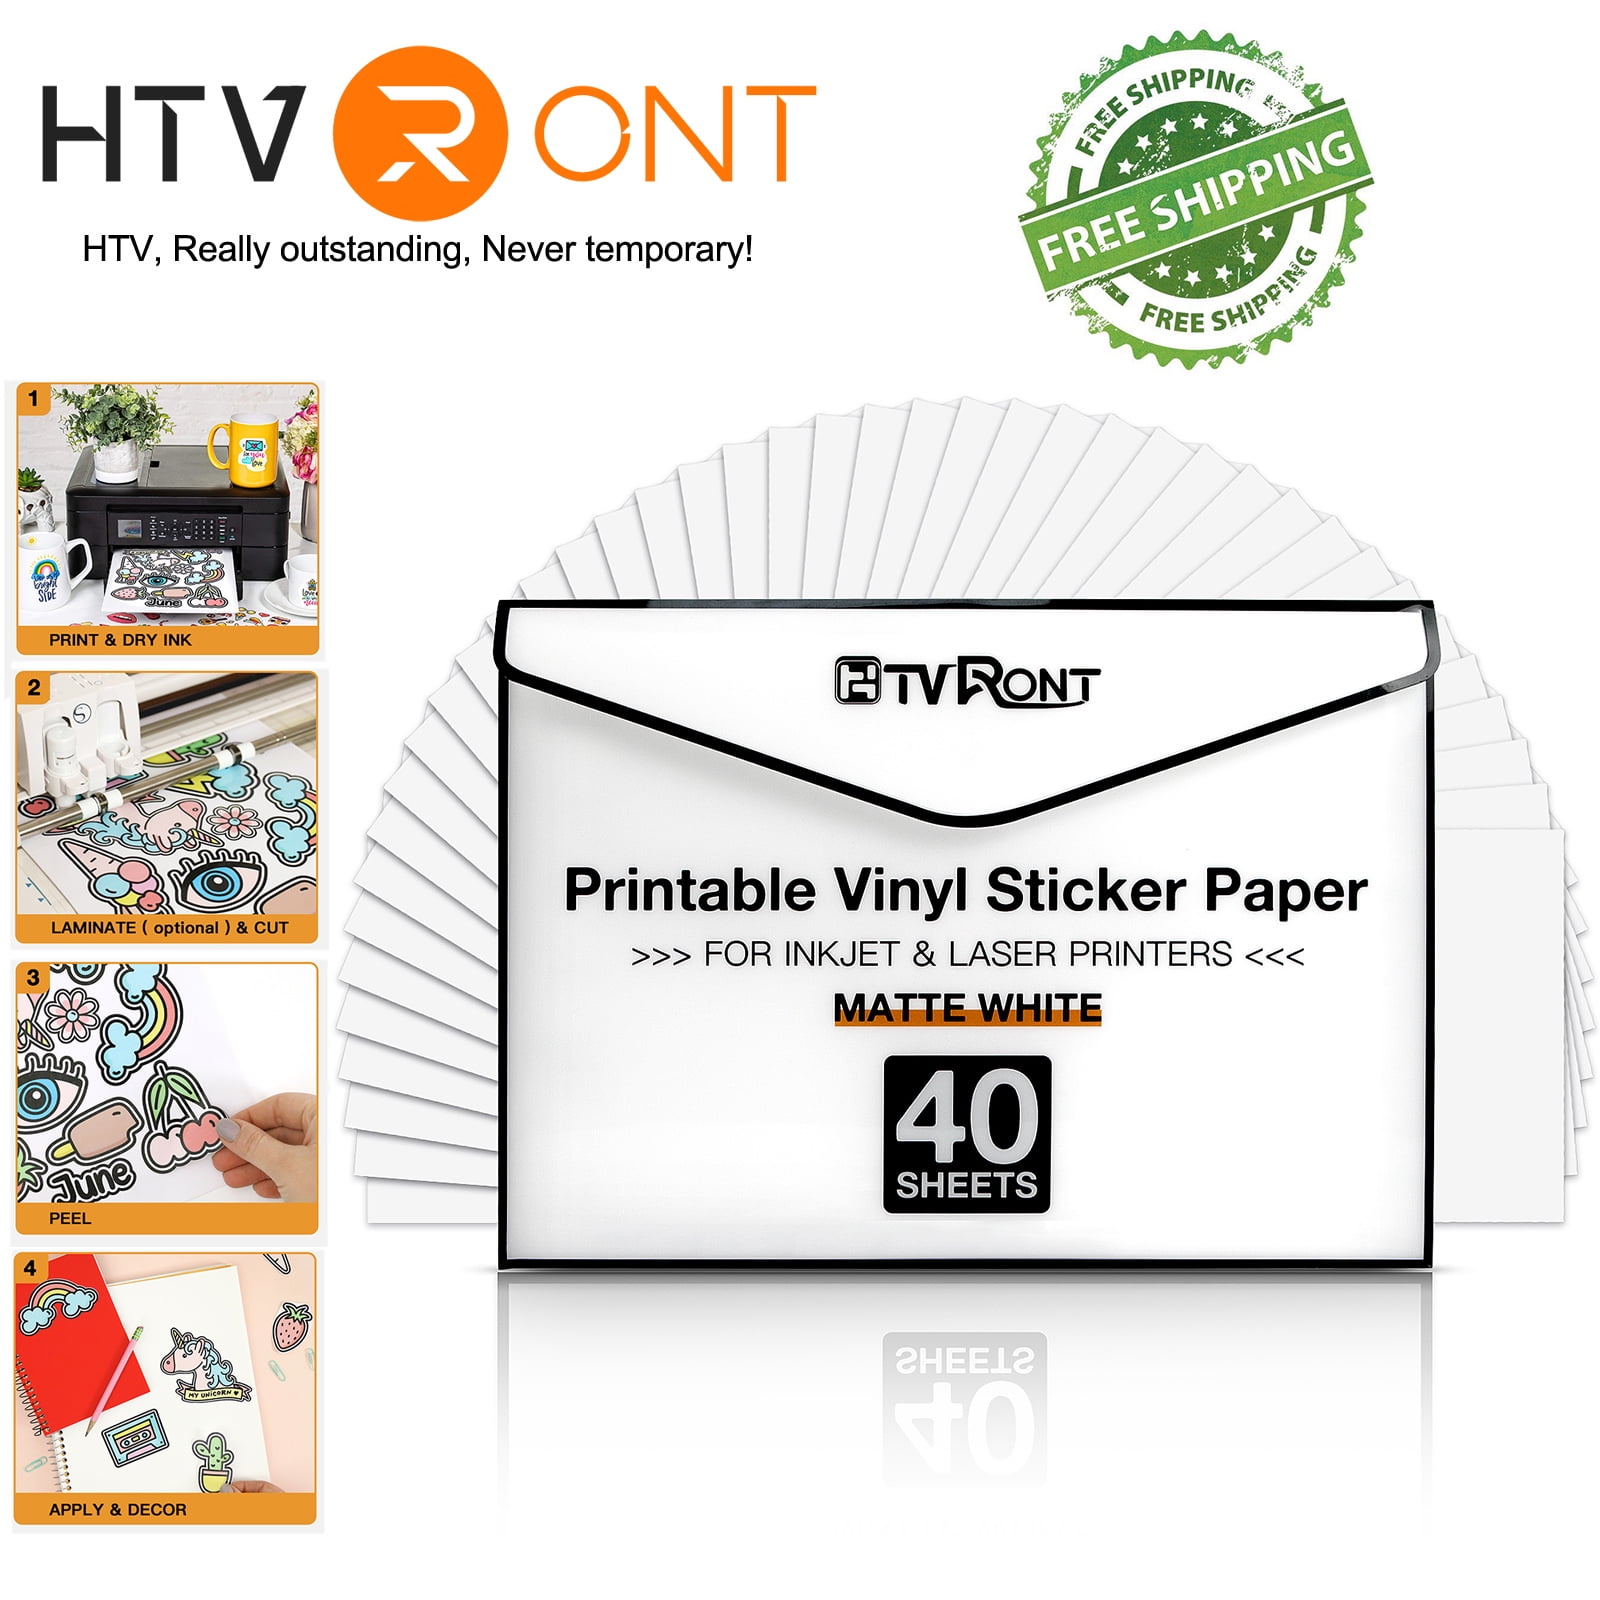 HTVRONT Printable Vinyl for Inkjet Printer & Laser Printer - 40 Pcs Glossy  White Inkjet Printable Vinyl Sticker Paper, 8.5x11 